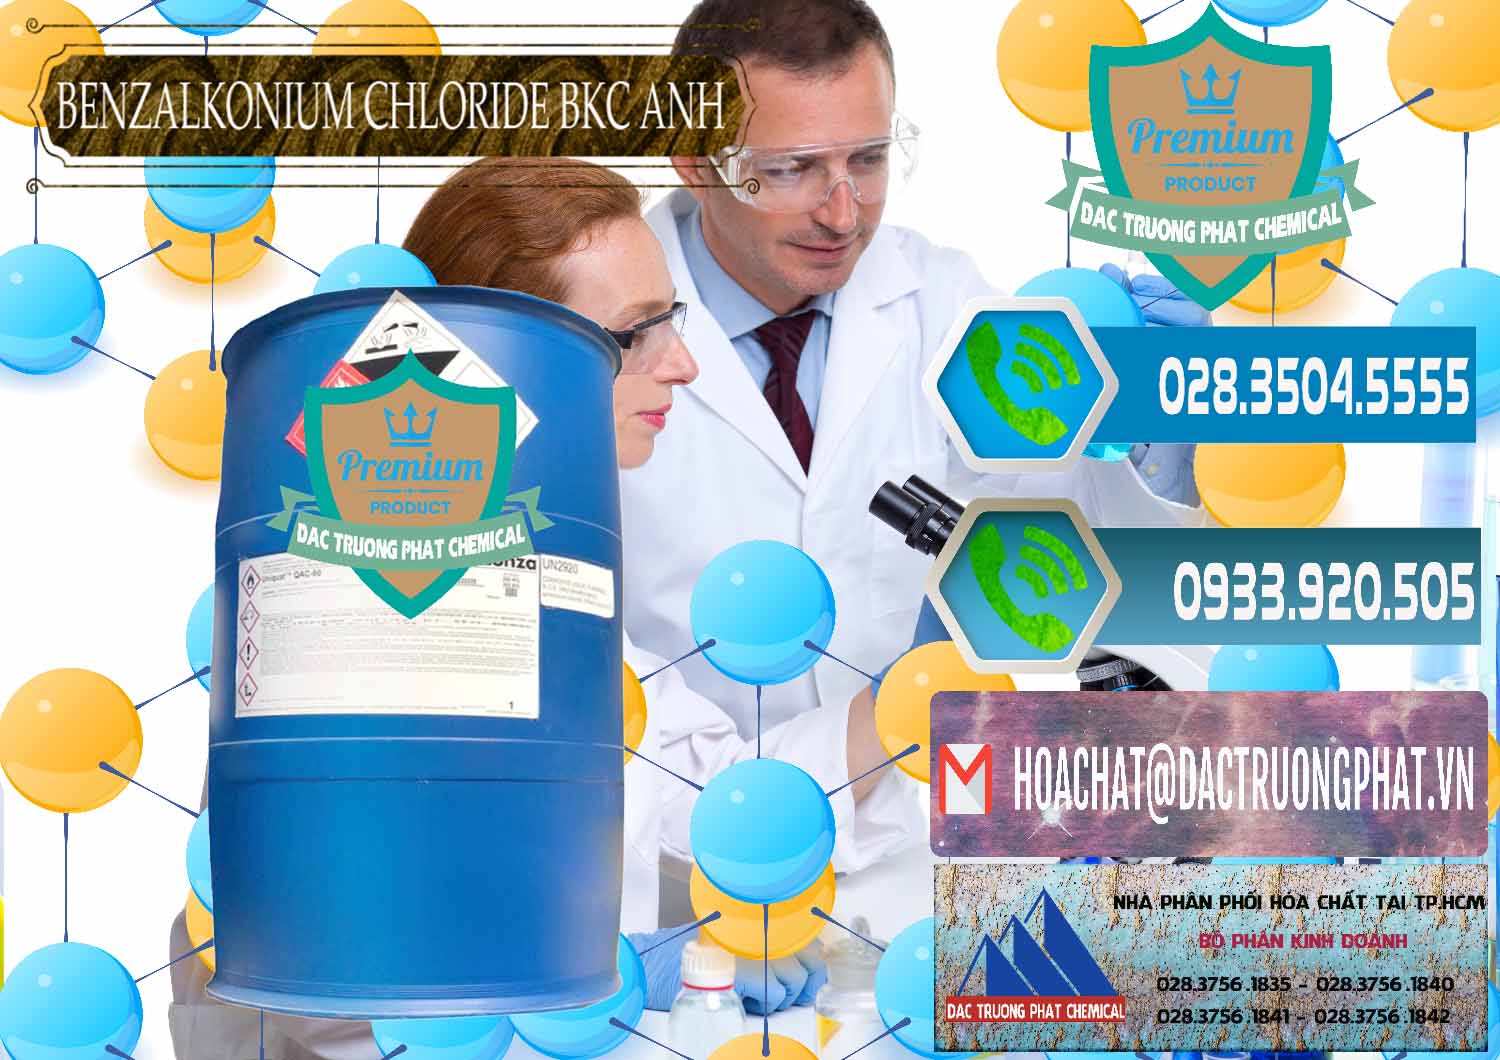 Cty bán & cung ứng BKC - Benzalkonium Chloride 80% Anh Quốc Uk Kingdoms - 0457 - Nơi phân phối ( cung ứng ) hóa chất tại TP.HCM - congtyhoachat.net